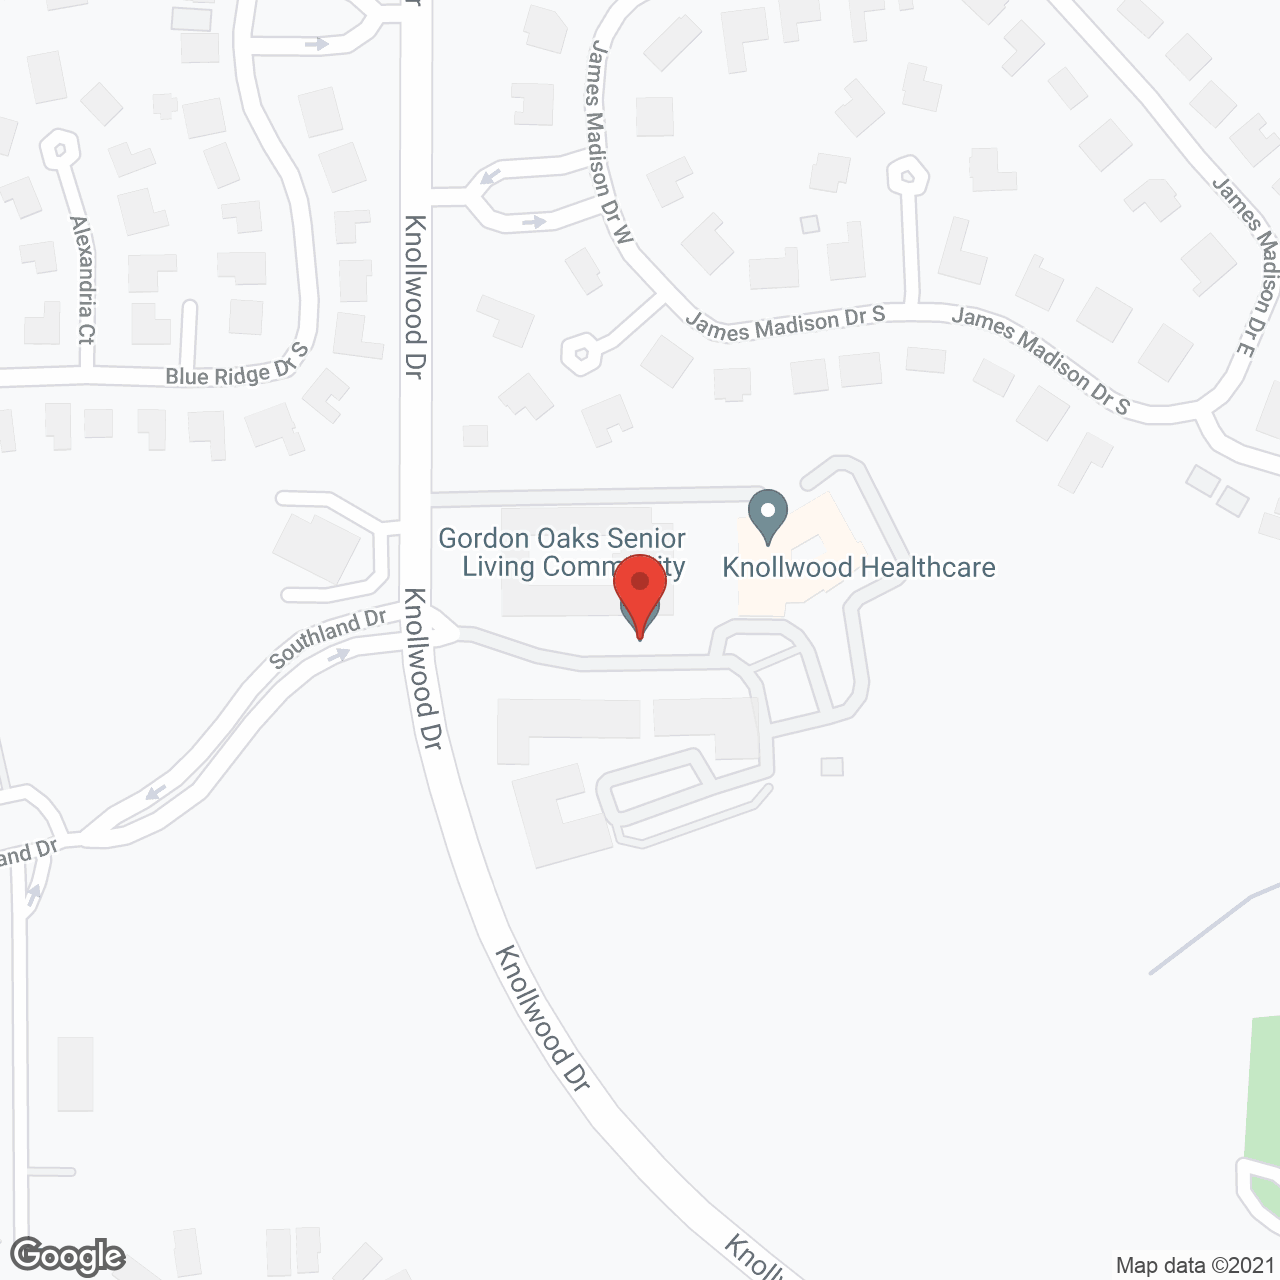 Gordon Oaks Senior Living Community in google map